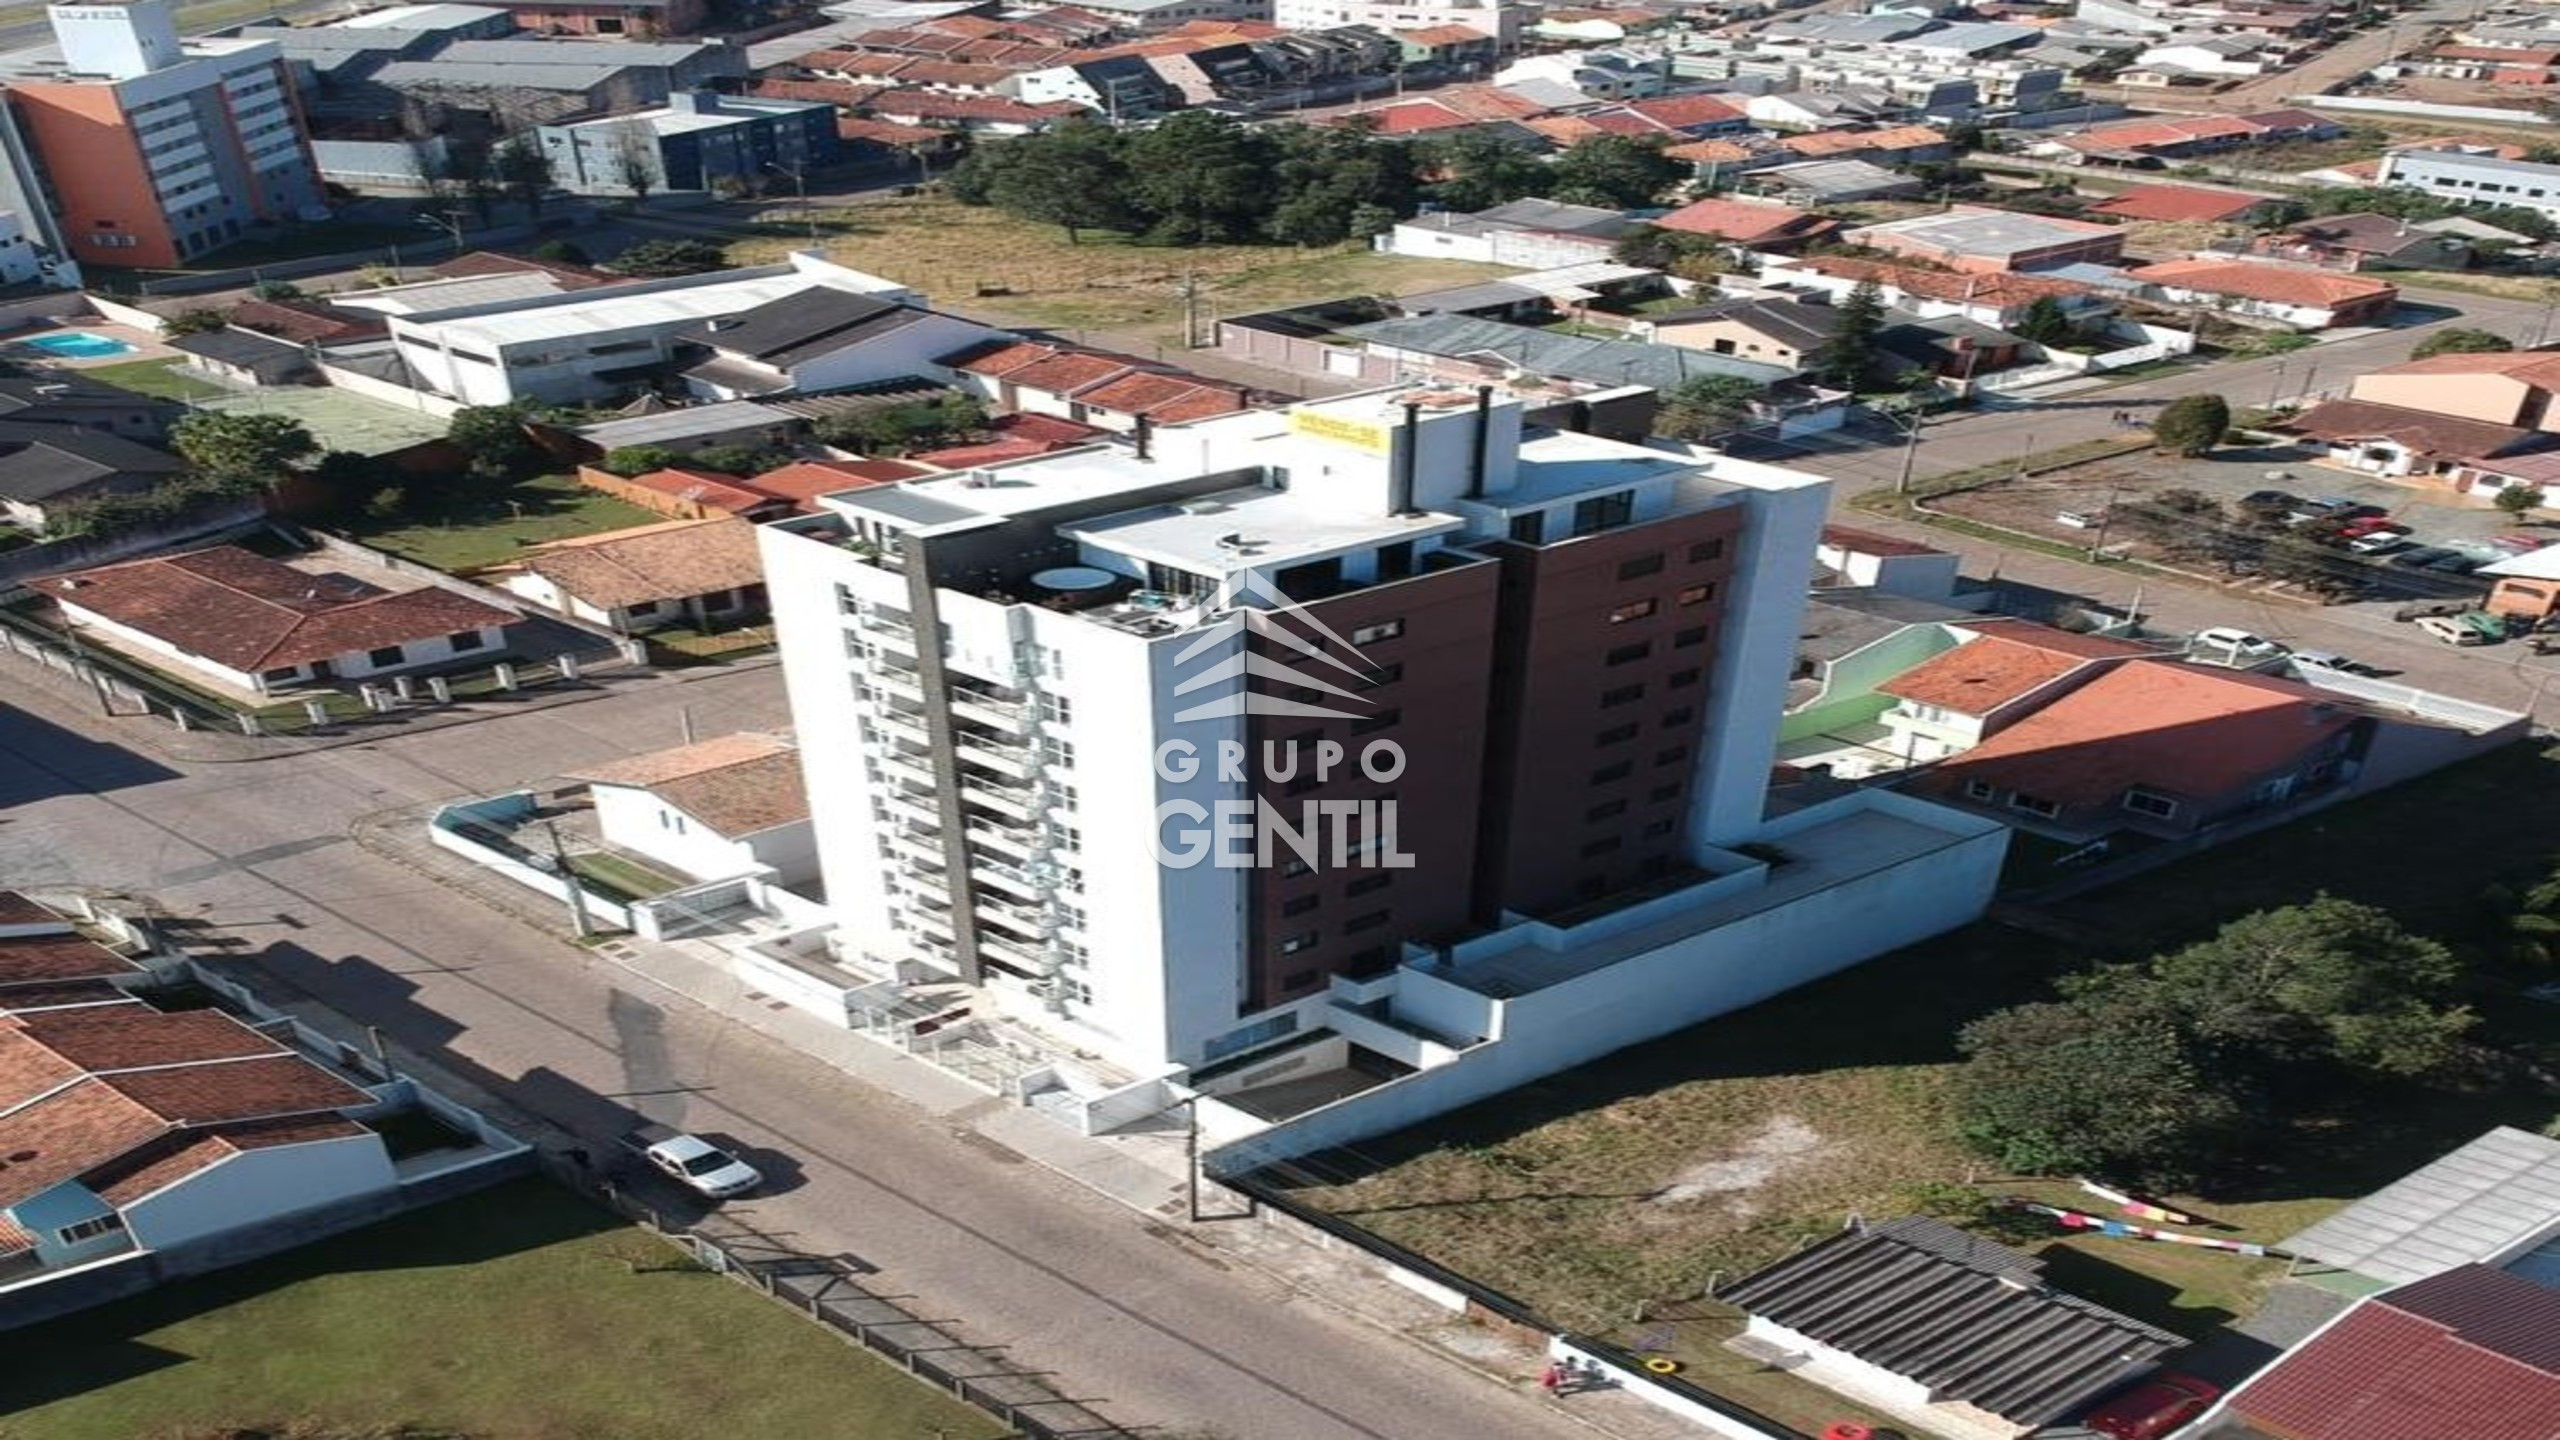 APARTAMENTO com 3 dormitórios à venda com 153.33m² por R$ 560.000,00 no bairro Vila Solene - CAMPO LARGO / PR